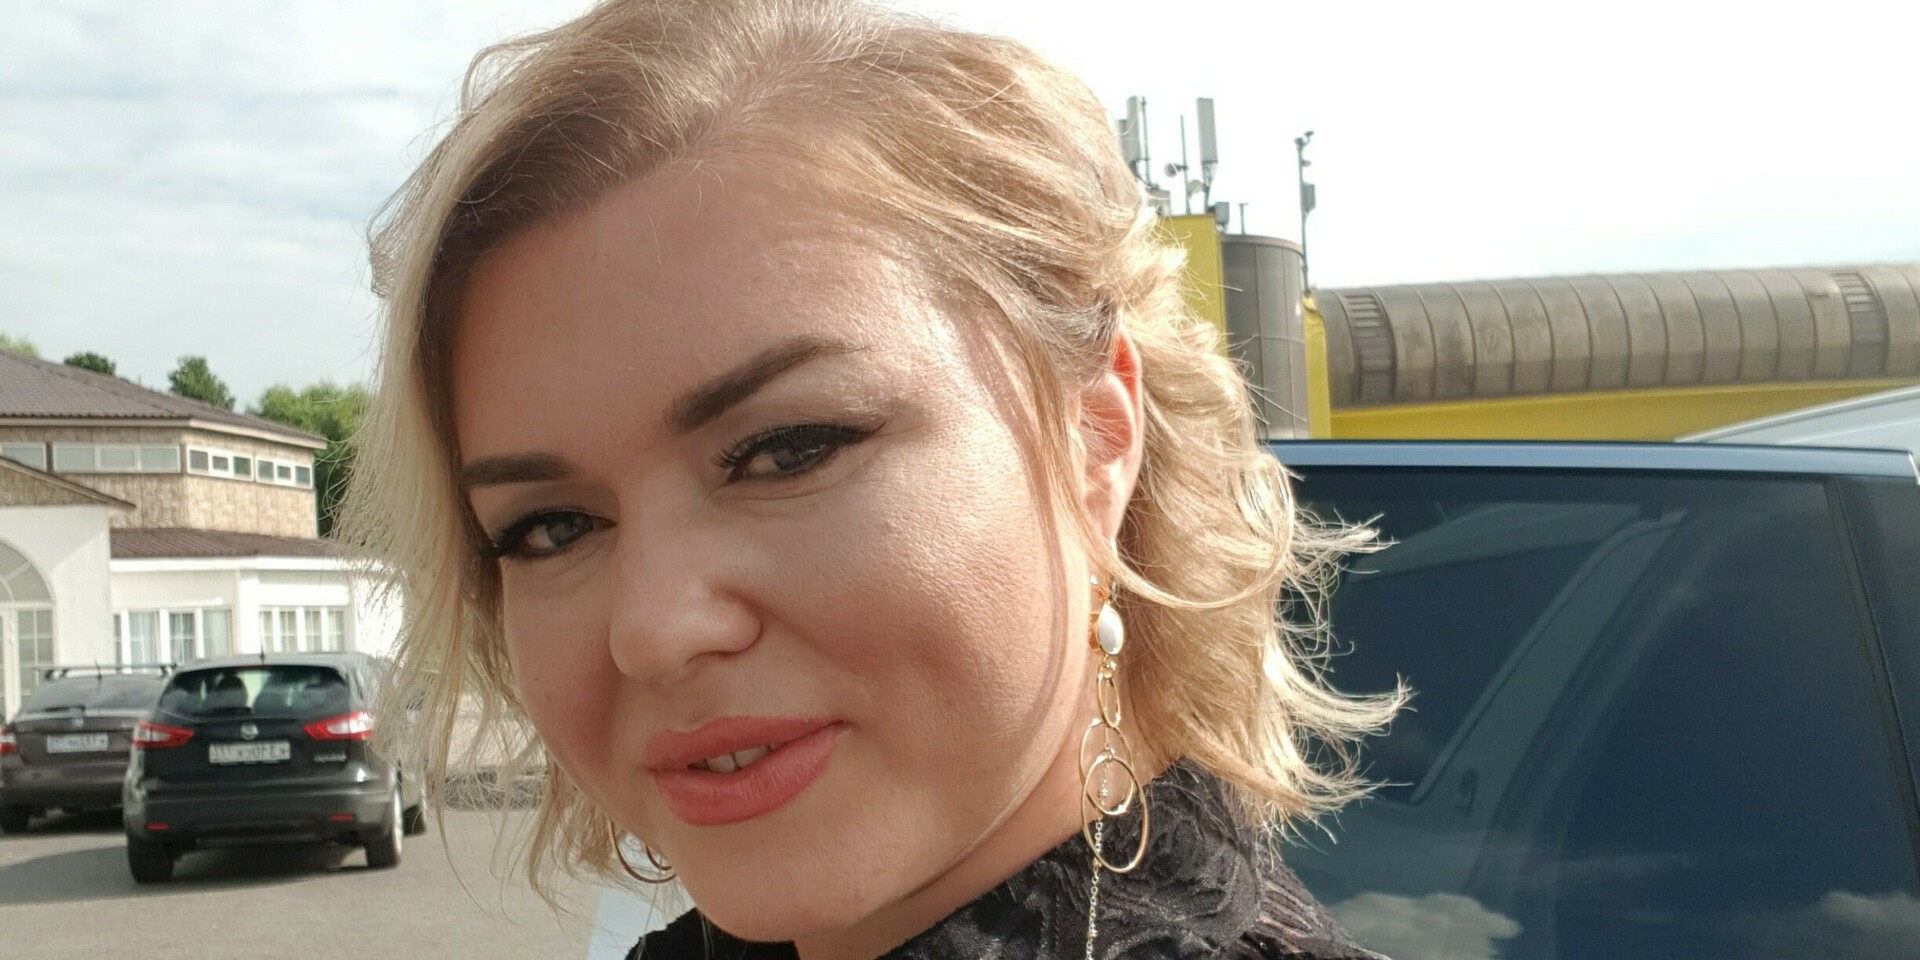 Марина Борисова